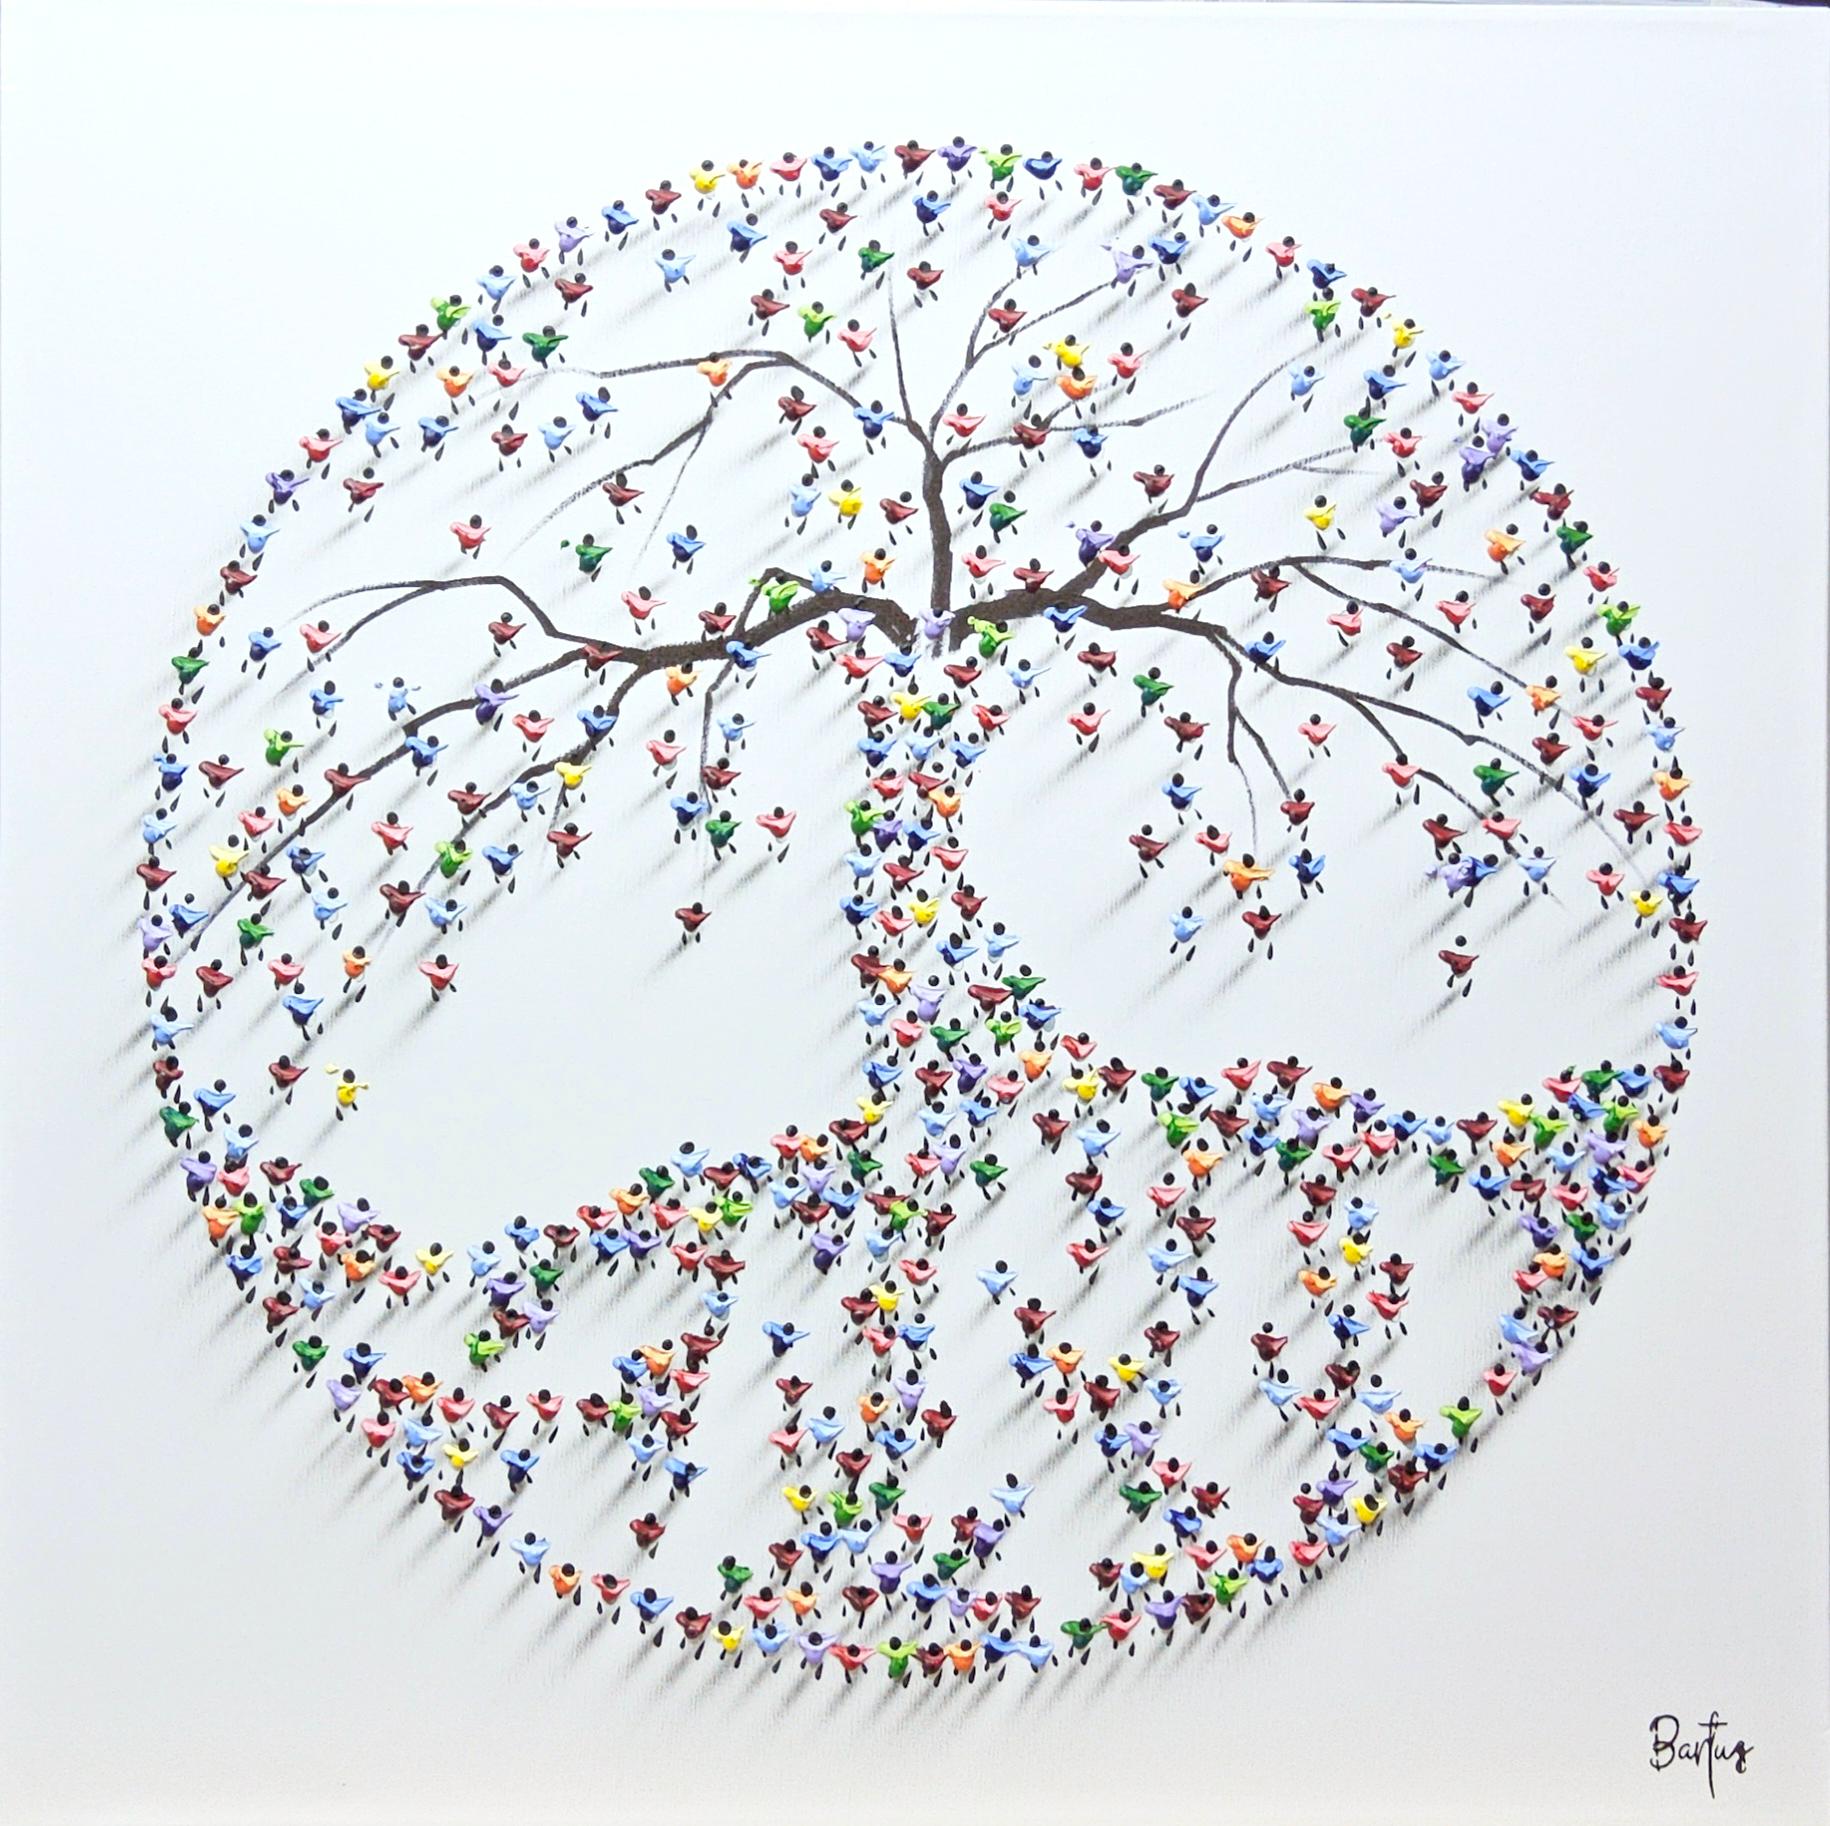 Dieses Werk, "We Grow Stronger Together", ist ein 32x32 Gemälde auf Leinwand des Künstlers Francisco Bartus. Es handelt sich um ein Lebensbaumsymbol, das aus einzelnen Farbklecksen besteht, die strategisch so platziert und geformt sind, dass der